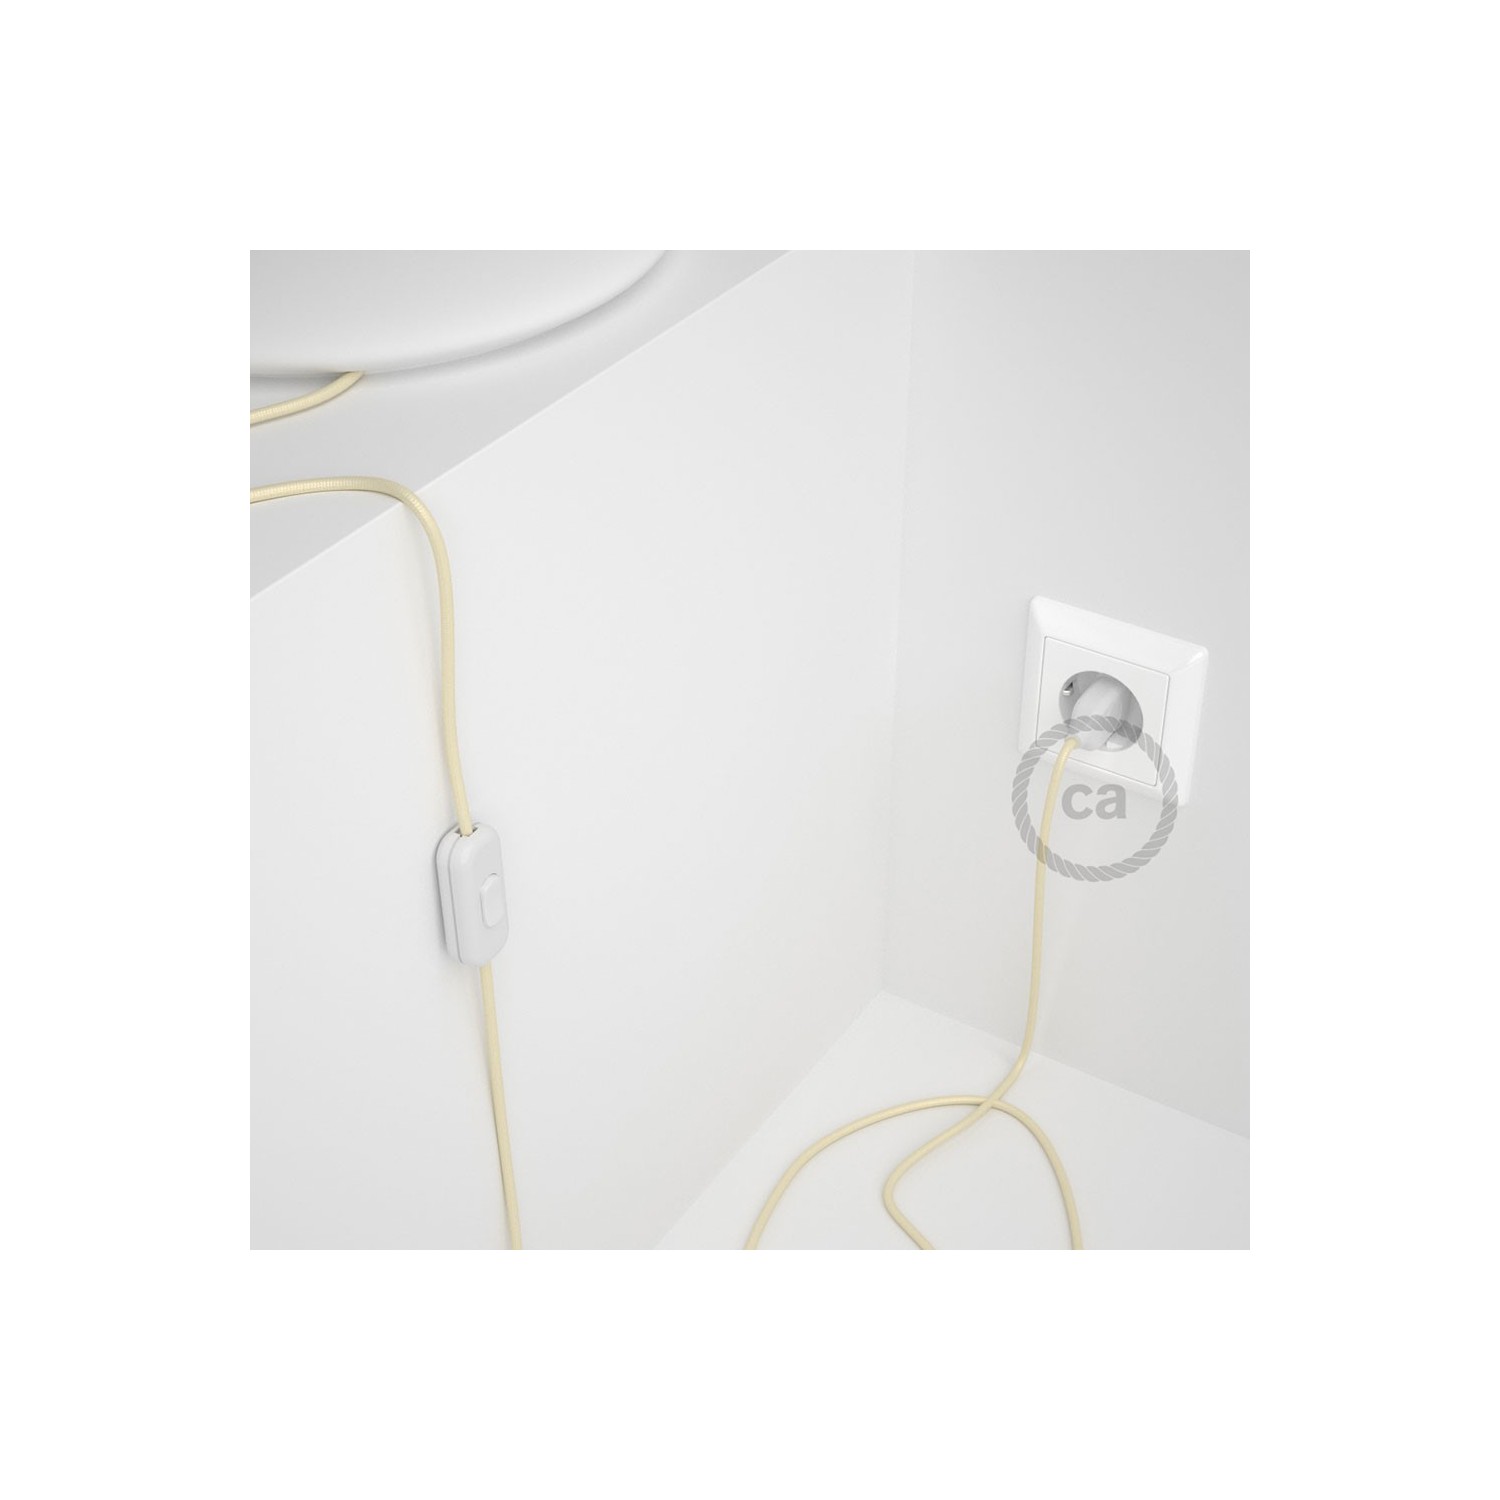 Cableado para lámpara, cable RM00 Efecto Seda Marfil 1,8m. Elige tu el color de la clavija y del interruptor!